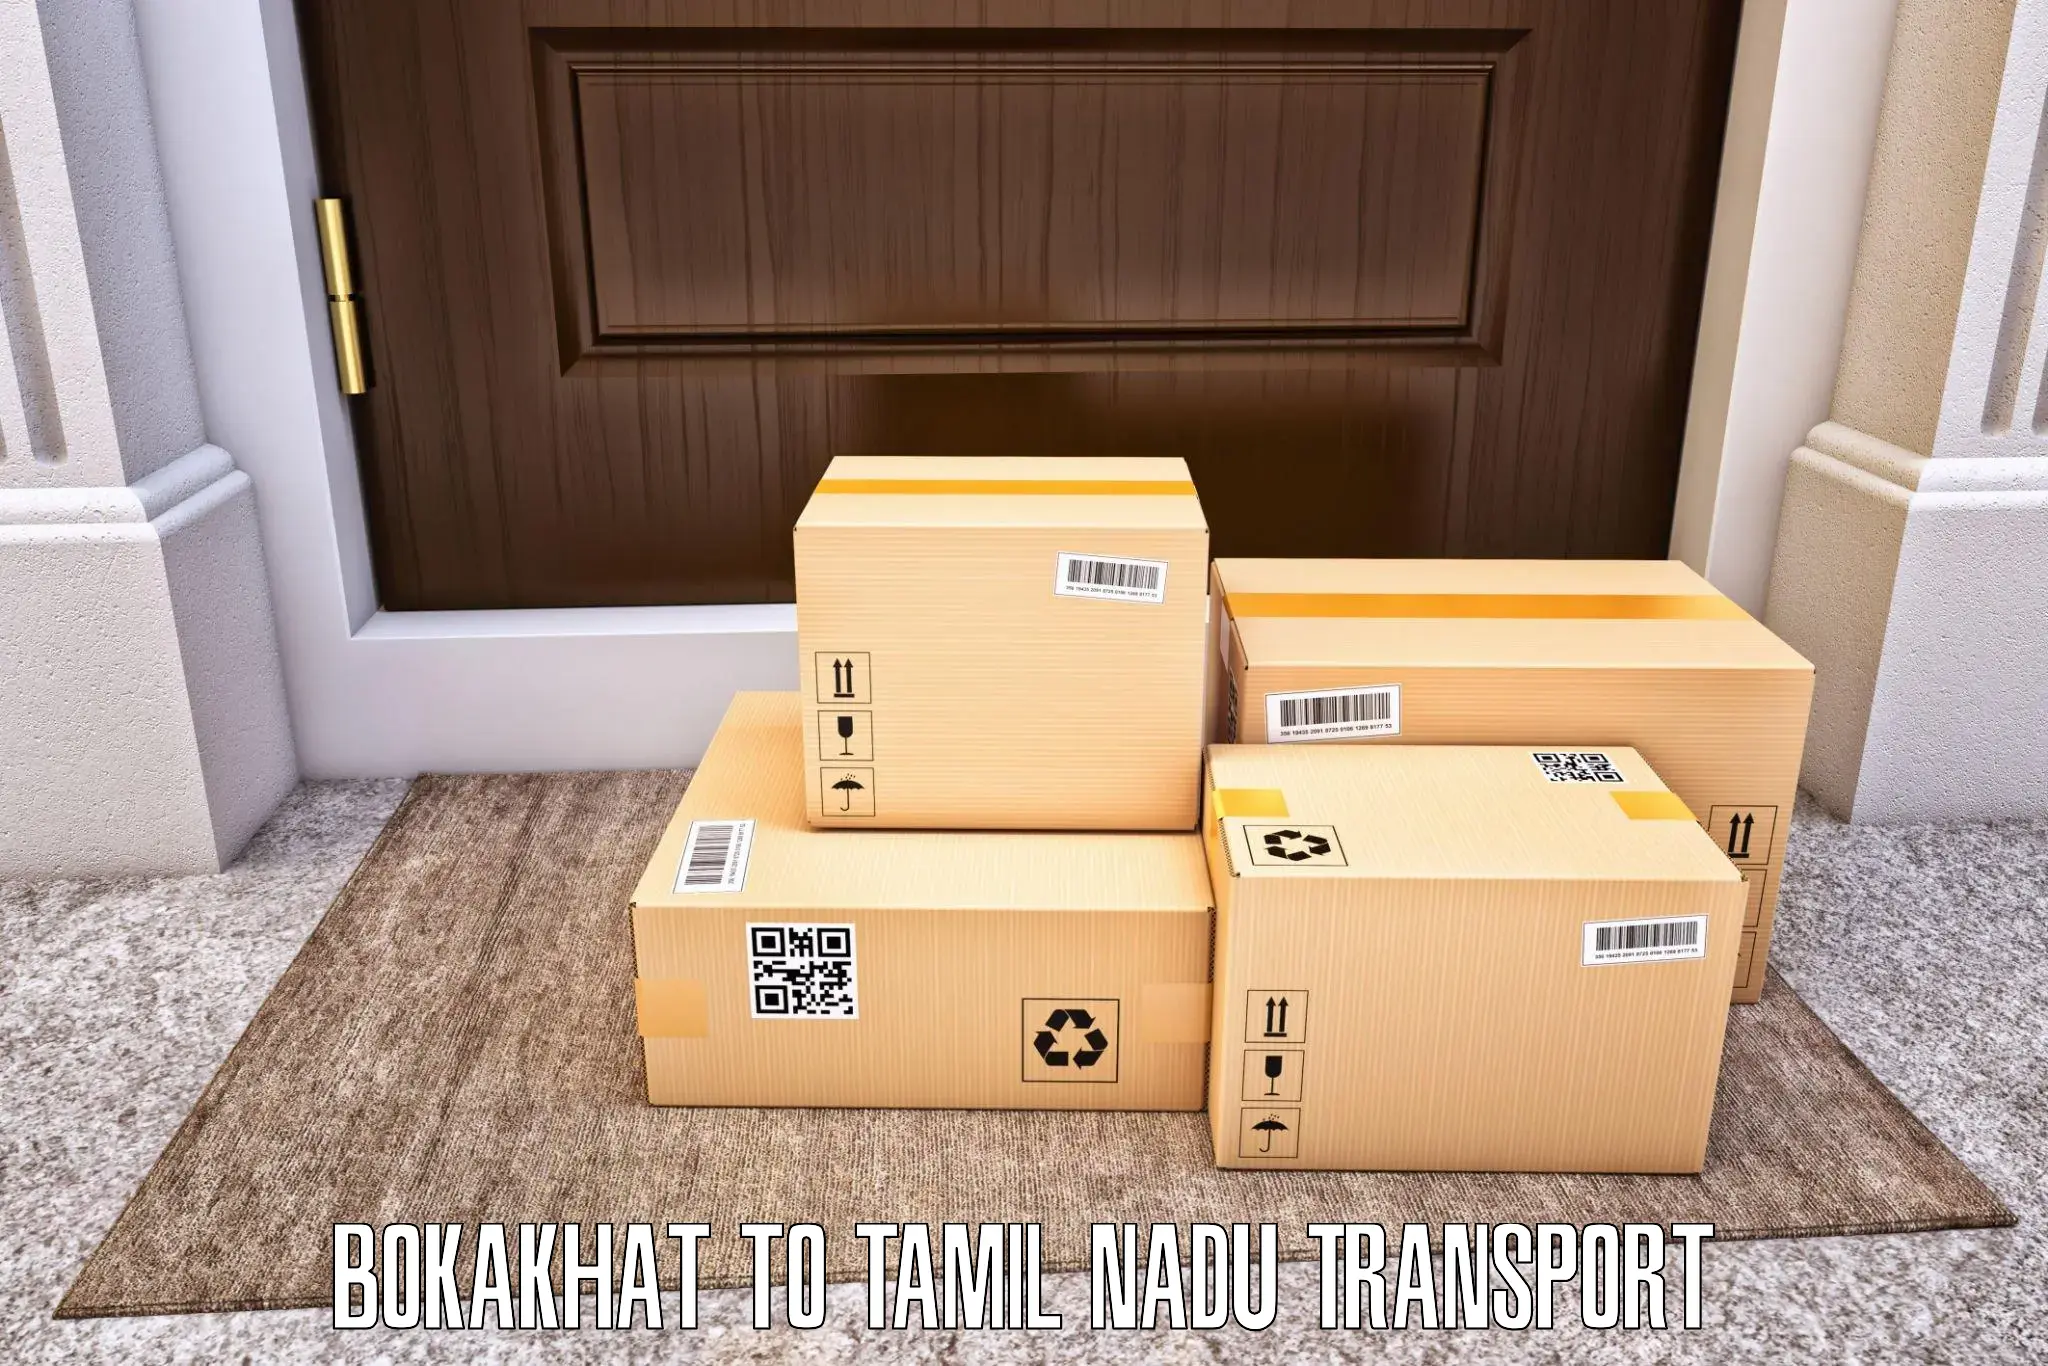 Parcel transport services Bokakhat to Ambasamudram